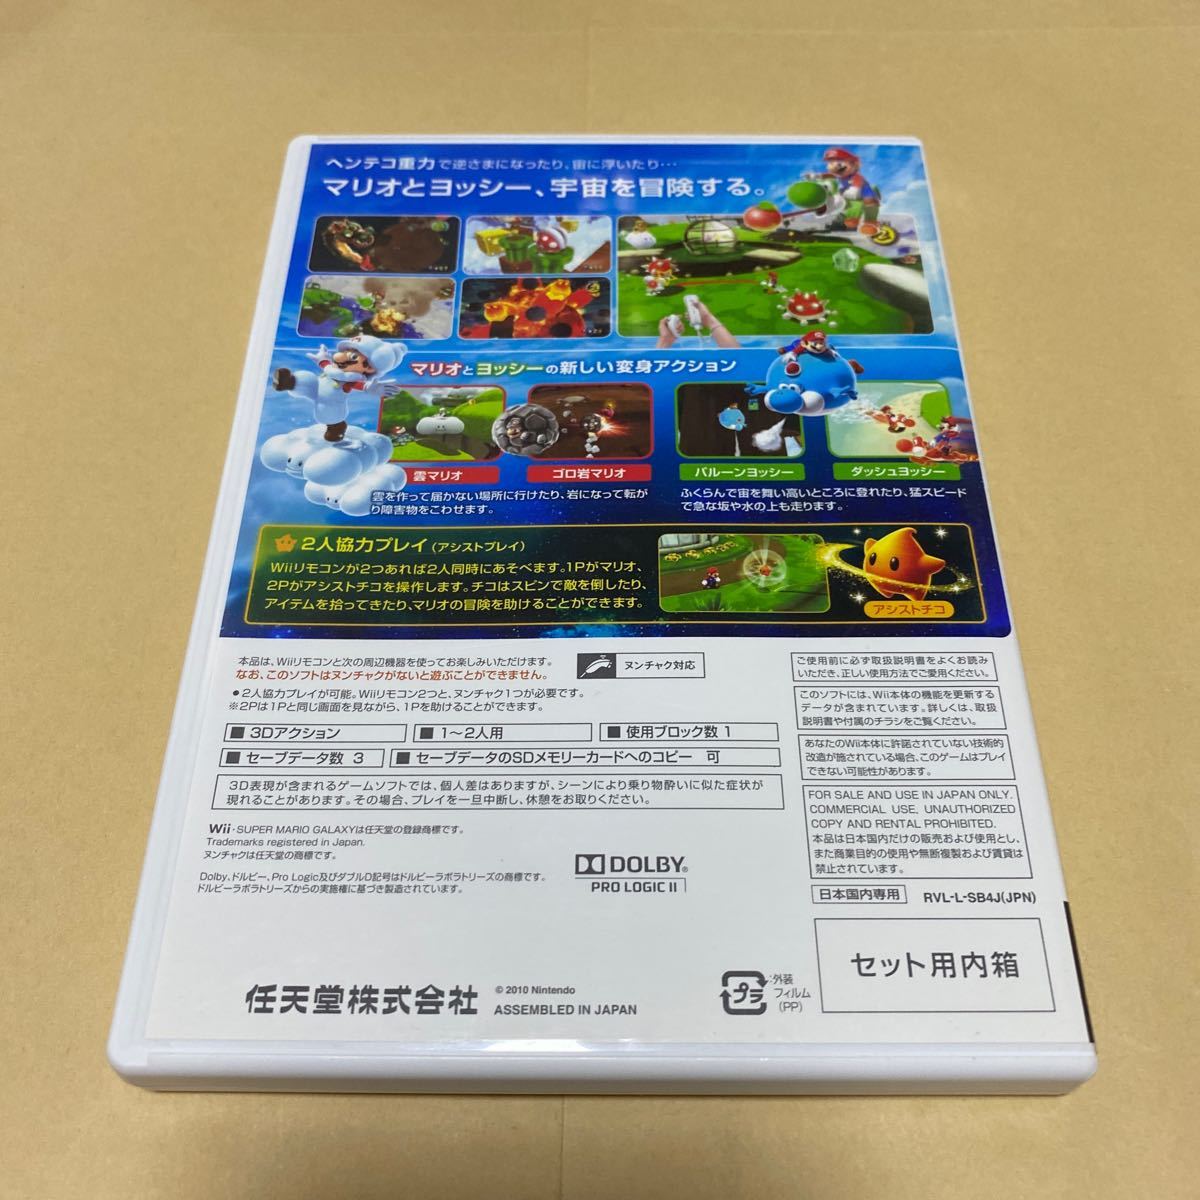 大乱闘スマッシュブラザーズXとスーパーマリオギャラクシー2 Wii